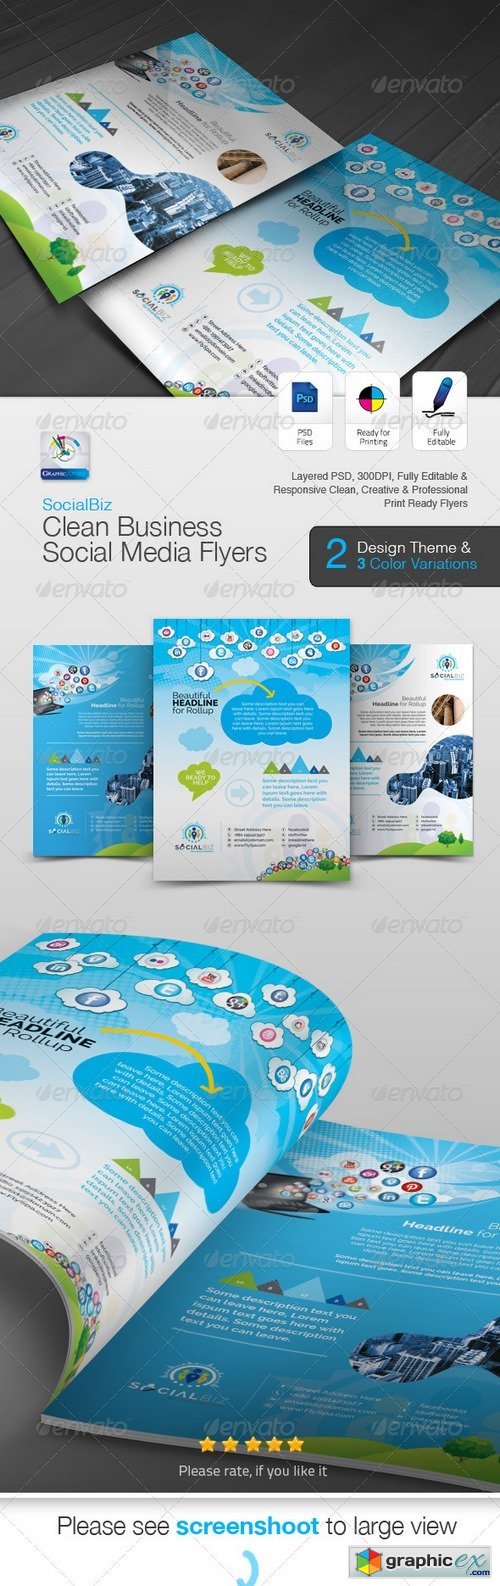 SocialBiz Social Media Flyer/Ad